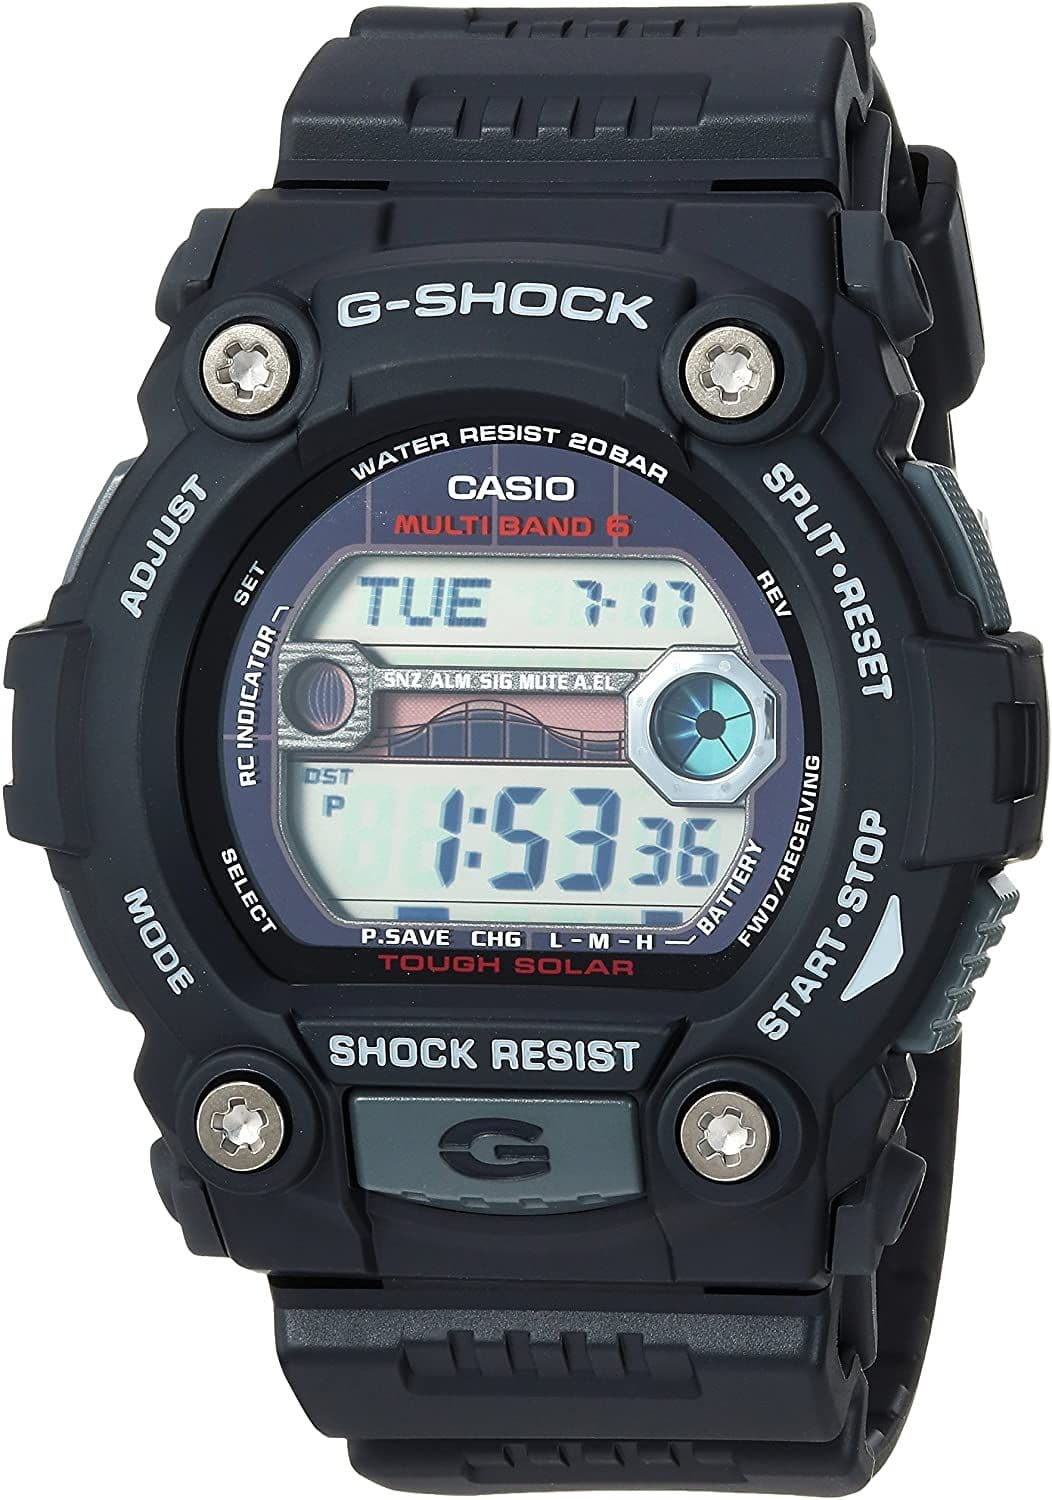 GW-7900-1ER  Casio g shock black round digital rubber strap watch